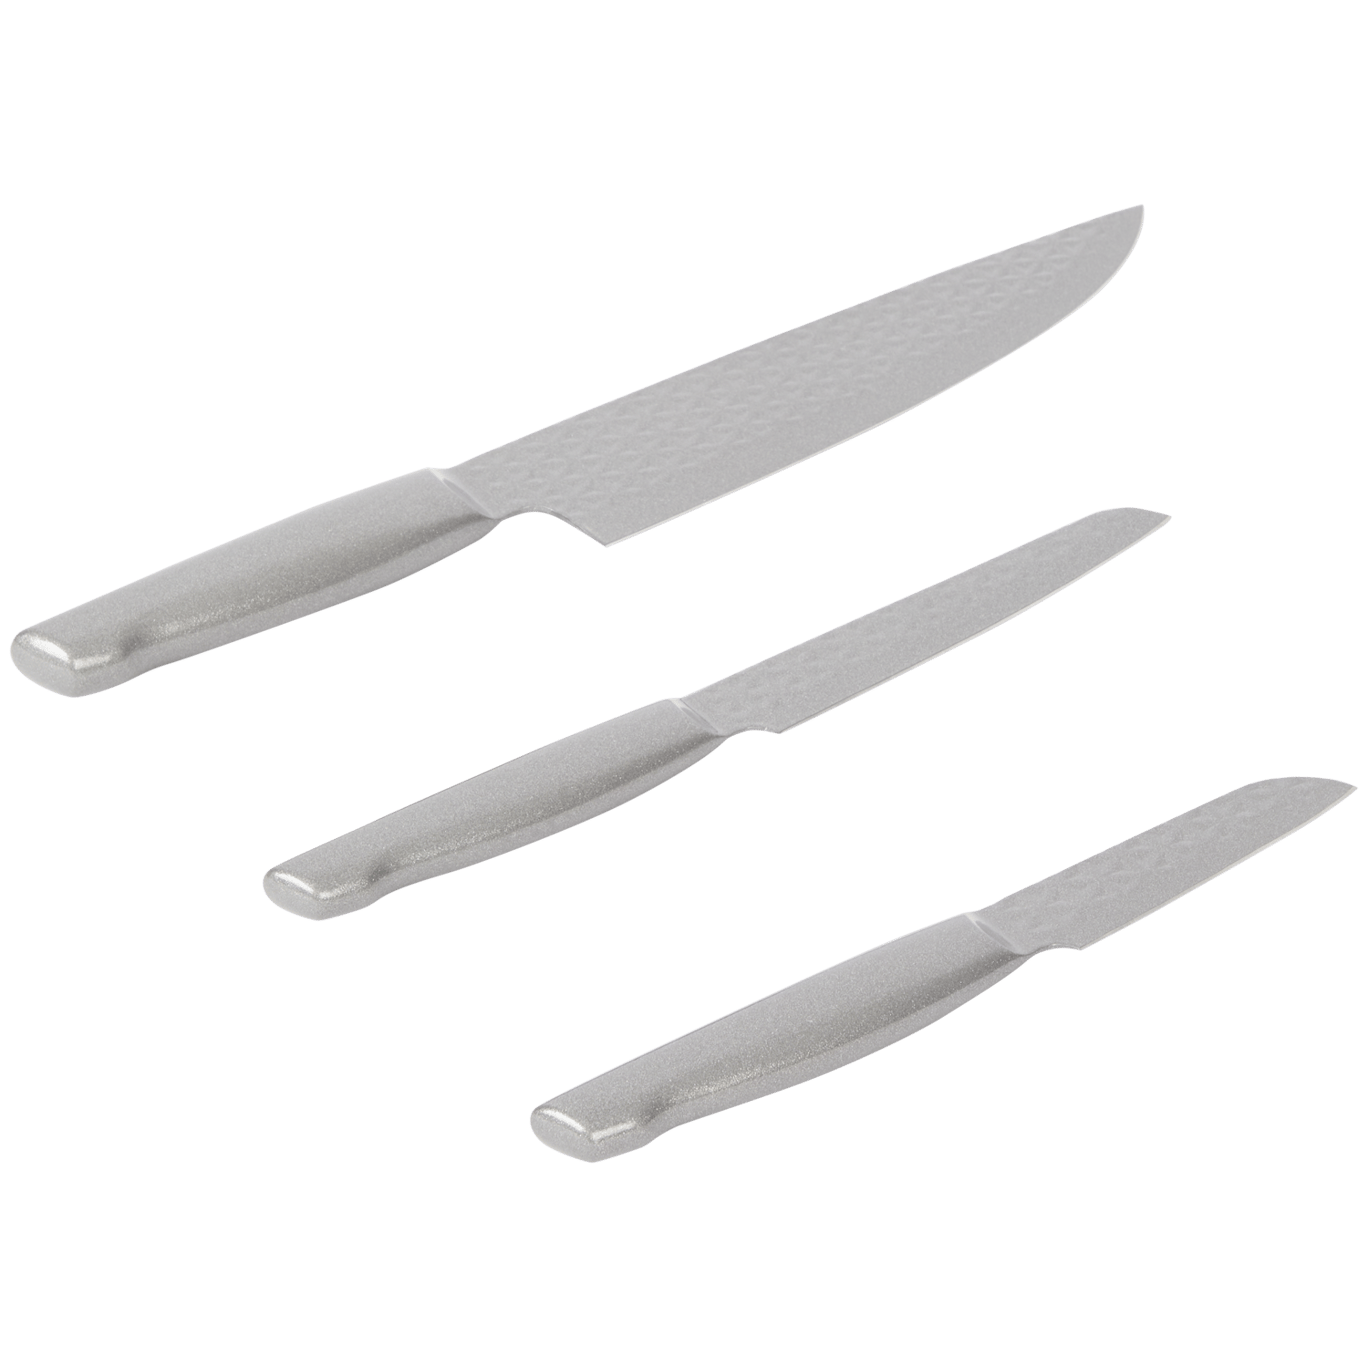 Set de couteaux